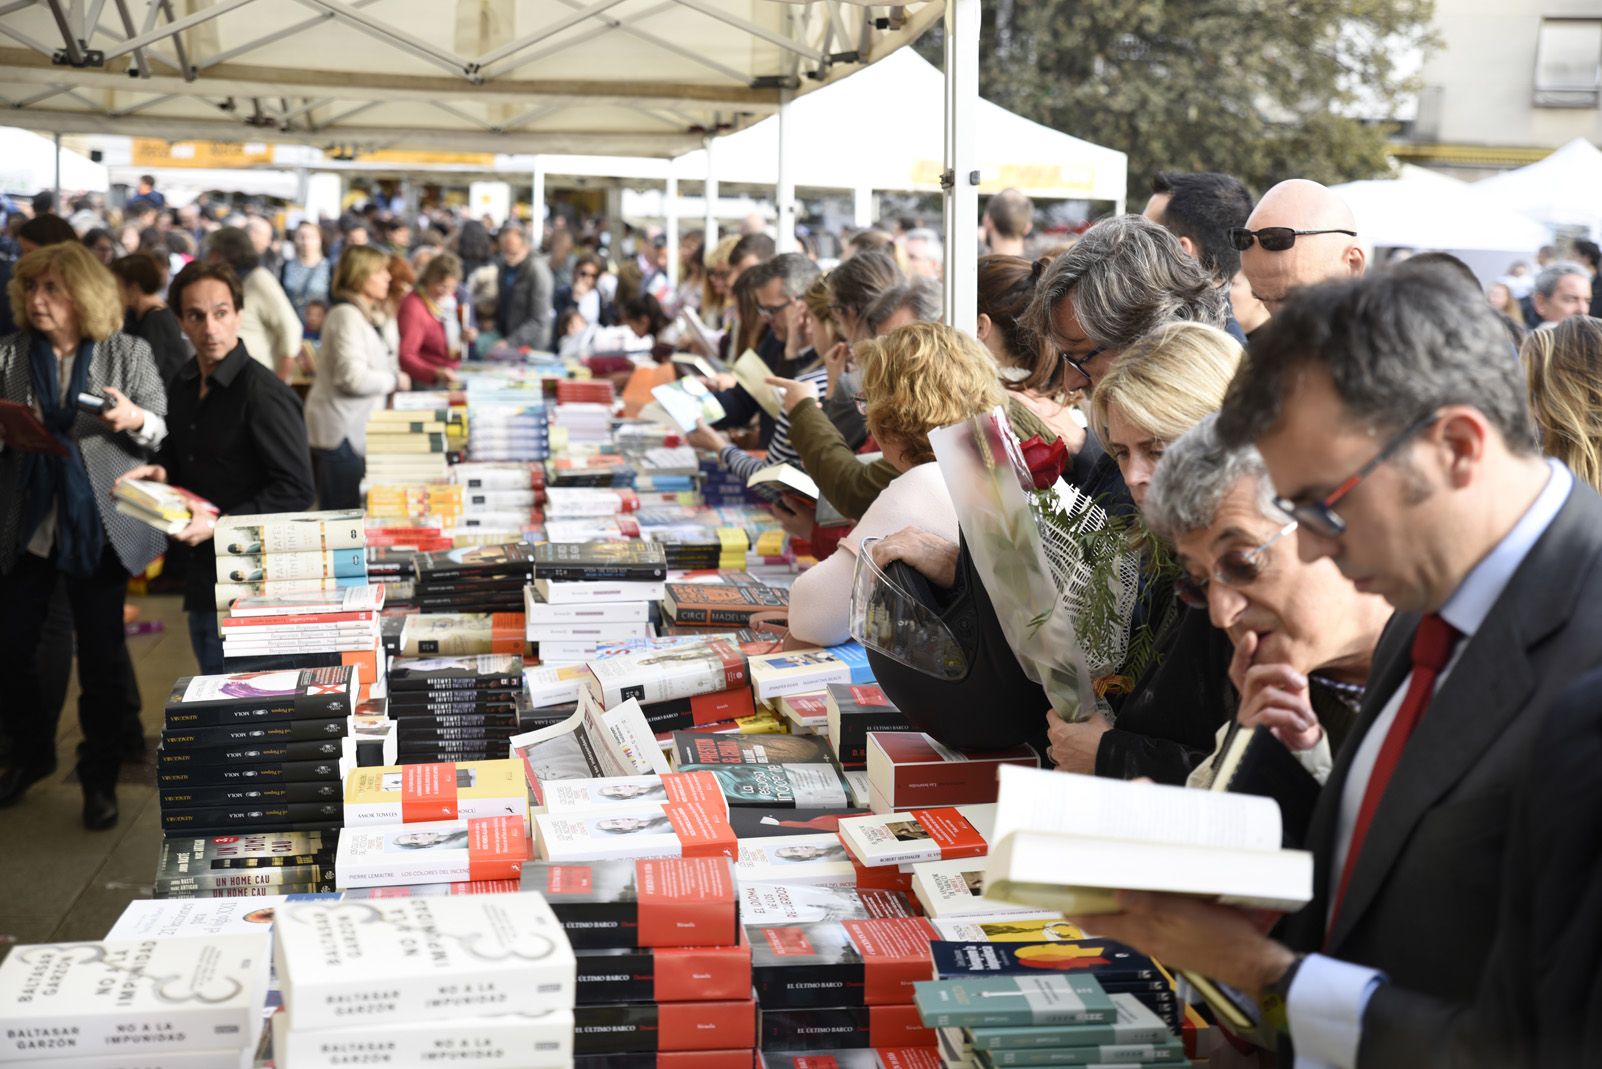 Venda de llibres durant la diada de Sant Jordi. Foto: Bernat Millet.